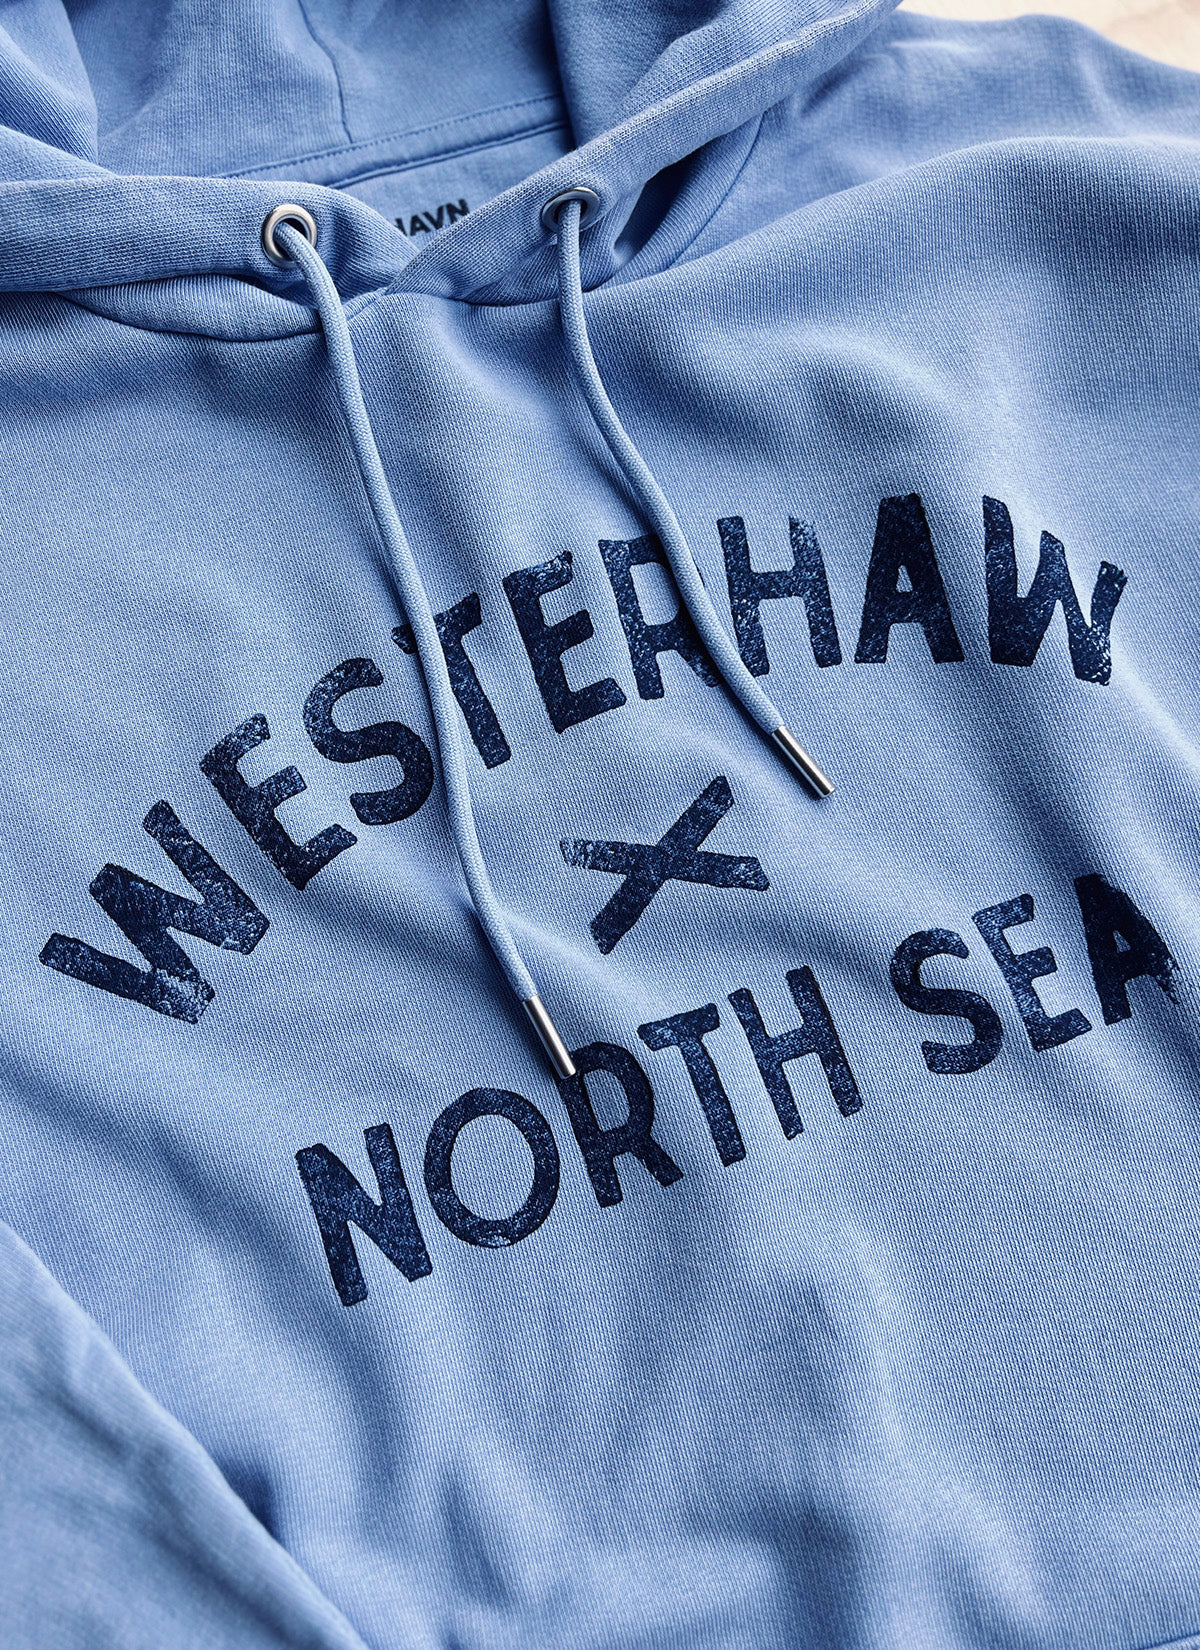 Hoodie "Westerhaw - North Sea"